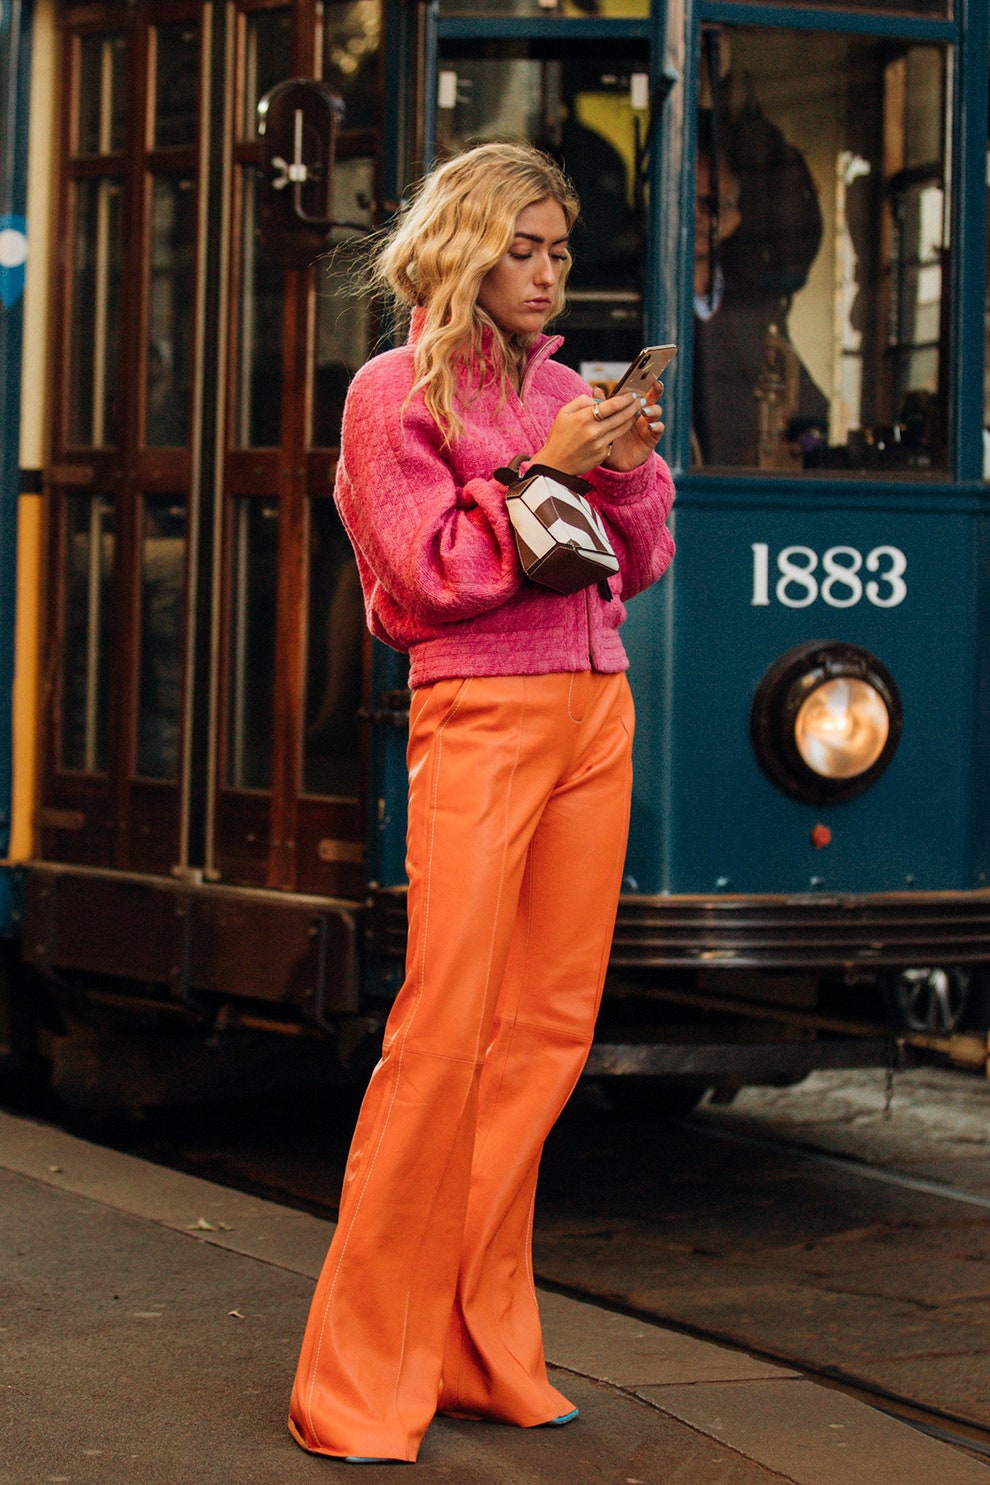 Оранжевый c розовым — самое модное сочетание по версии звезд стритстайла